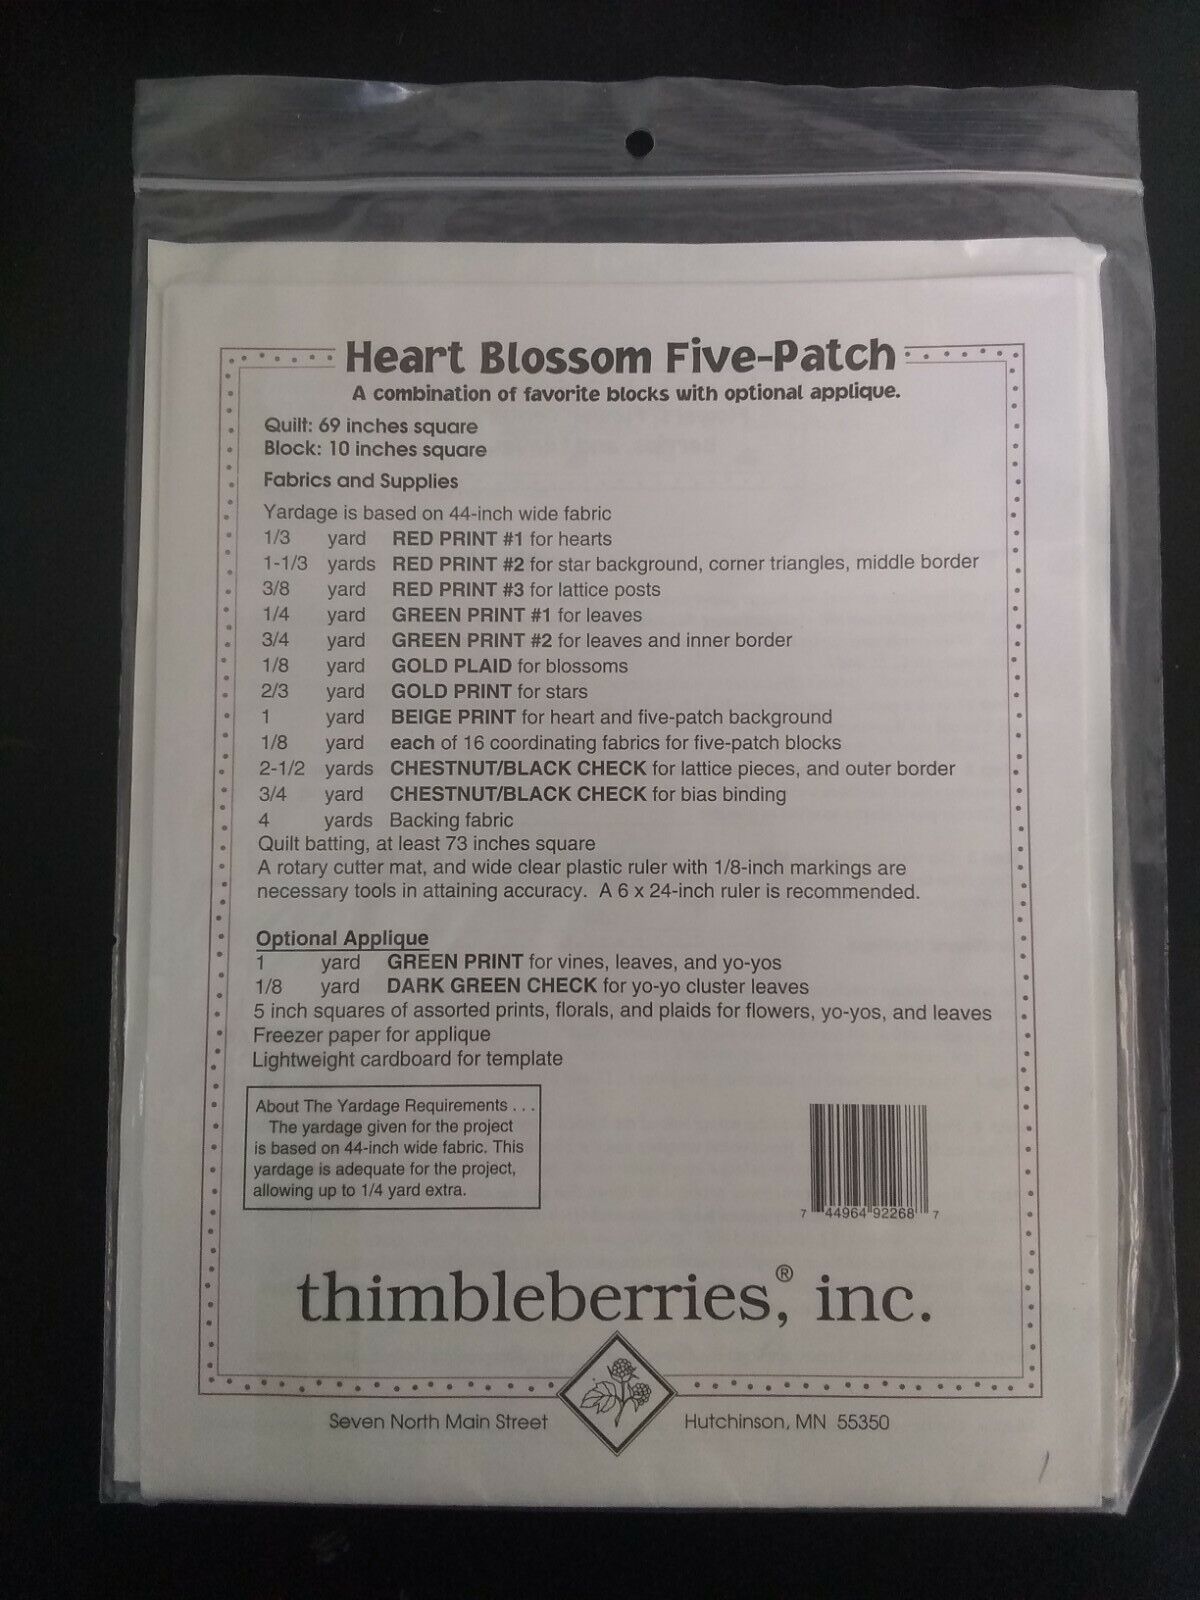 Heart Blossom Five Patch Quilt Pattern Thimbleberries 69"x69" Applique LJ 92268 - $7.87